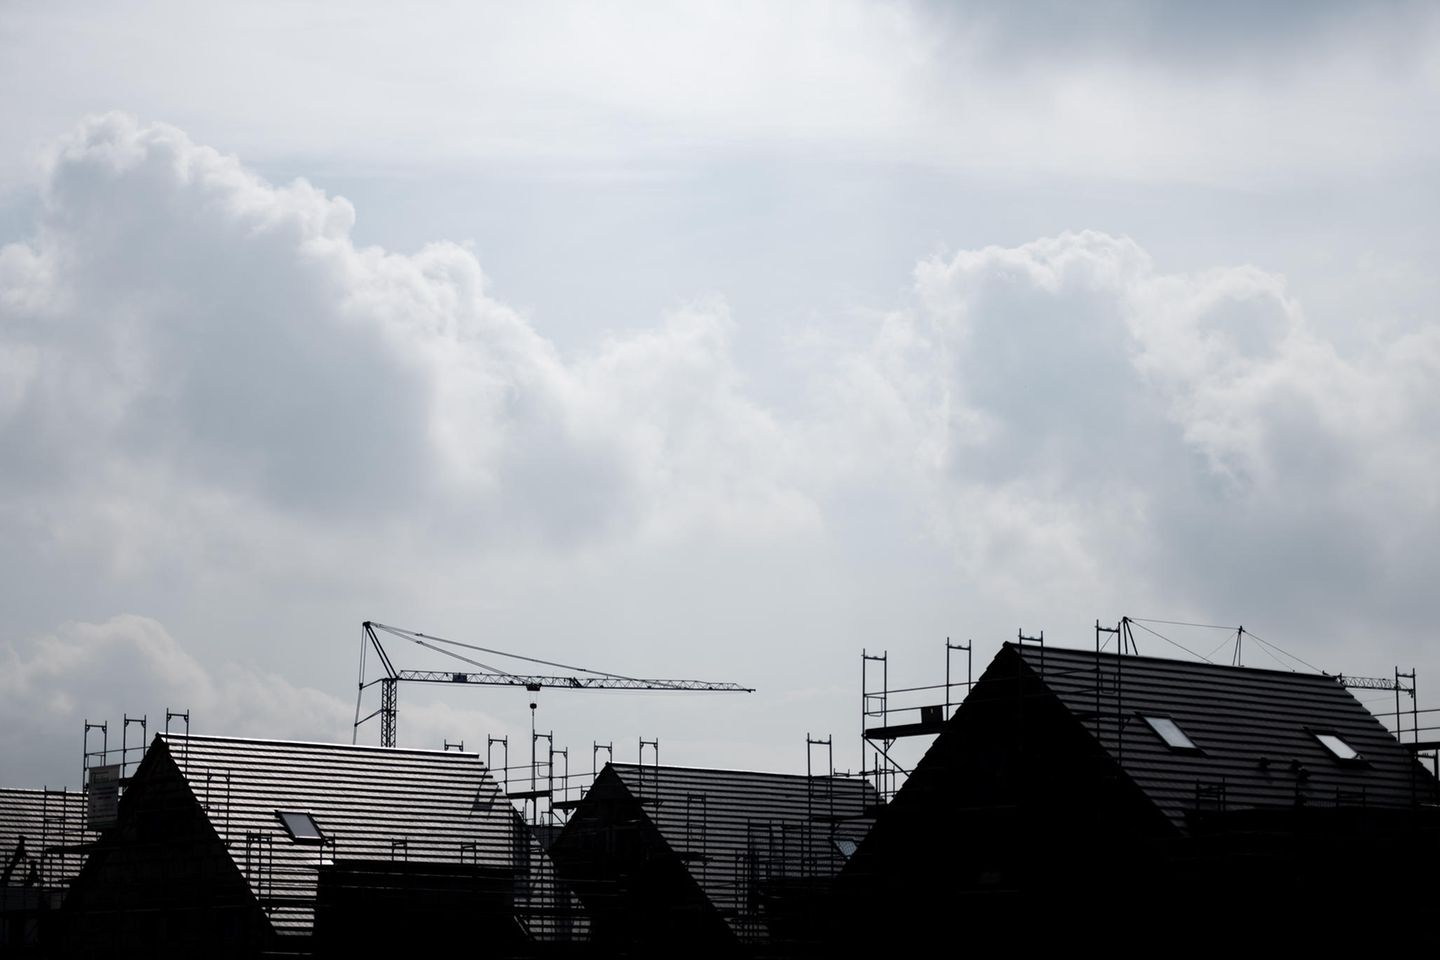 Baugebiet in Duisburg-Angerbogen: Marktsituation von einer „ausgeprägten Kaufzurückhaltung“ gezeichnet